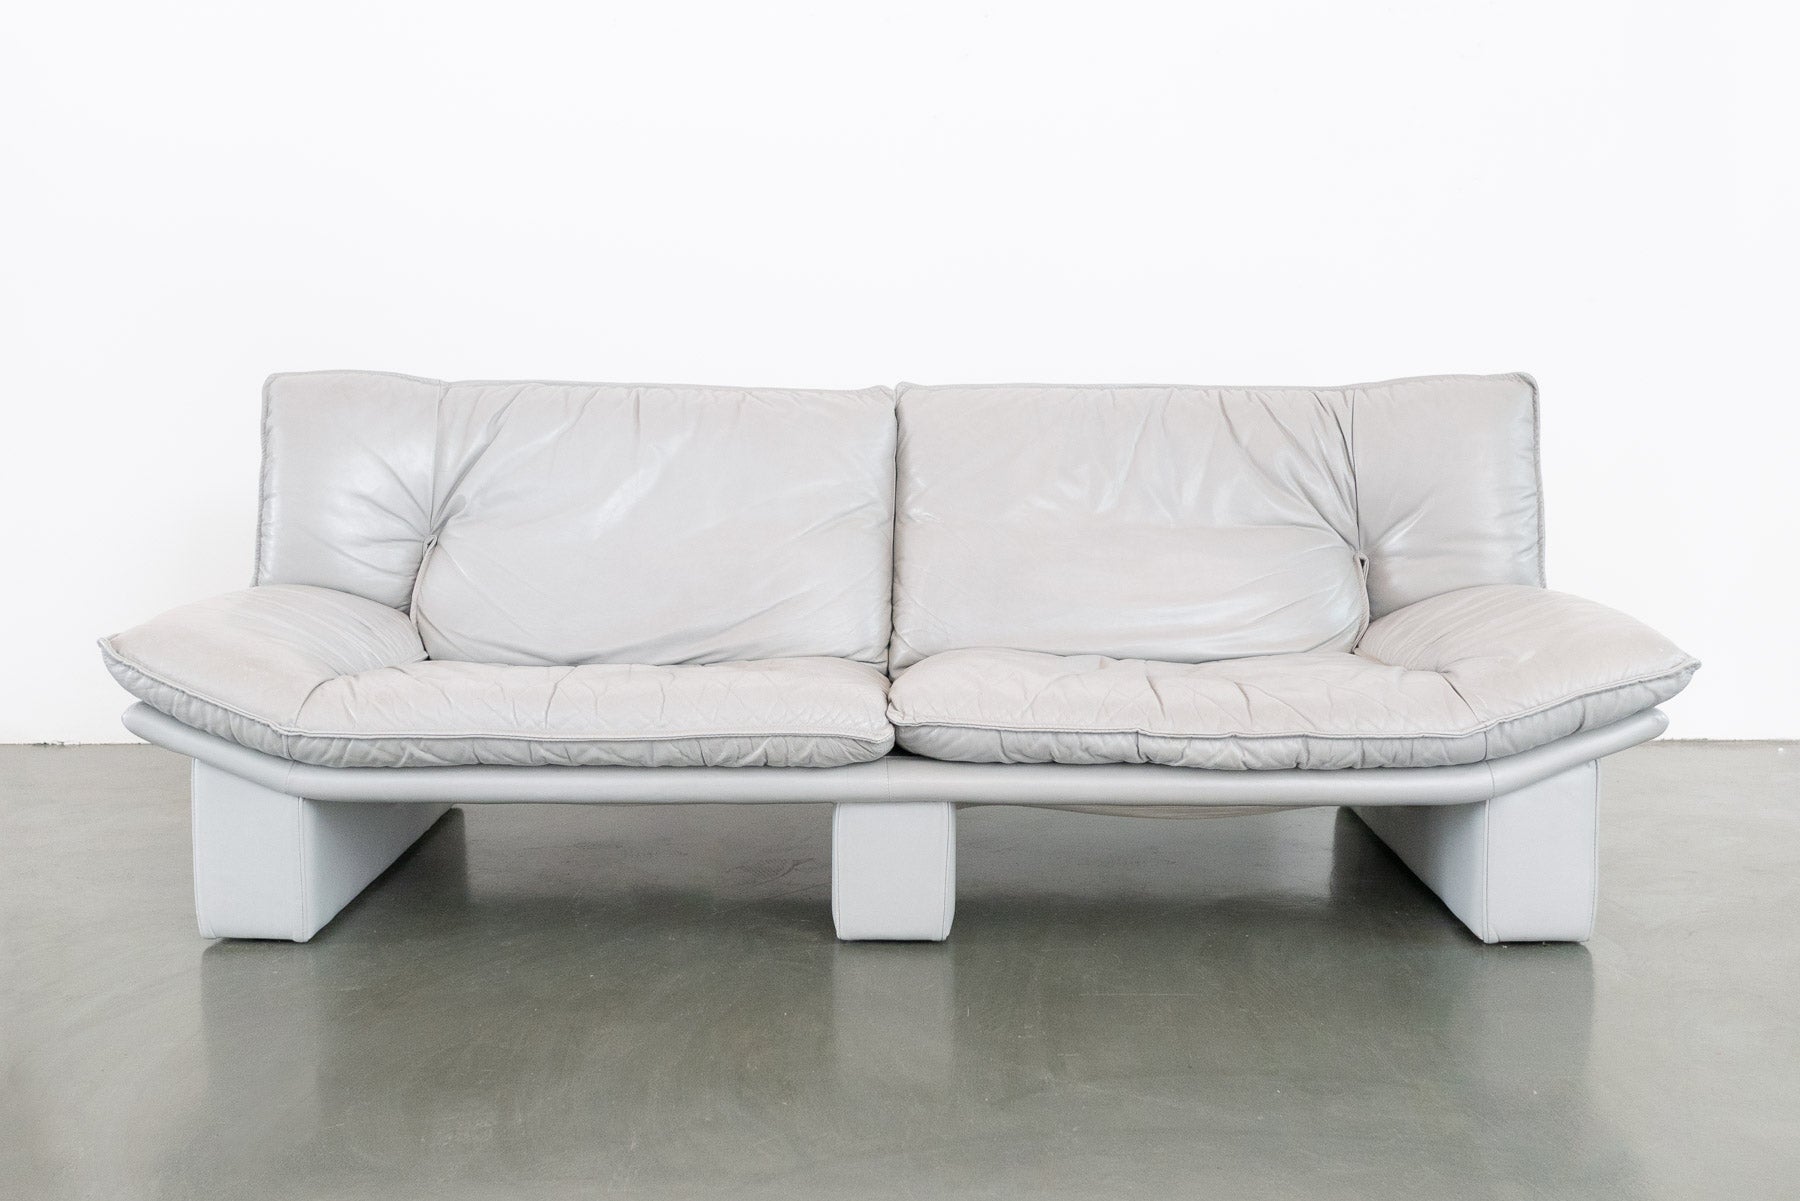 nicoletti sofa bed review